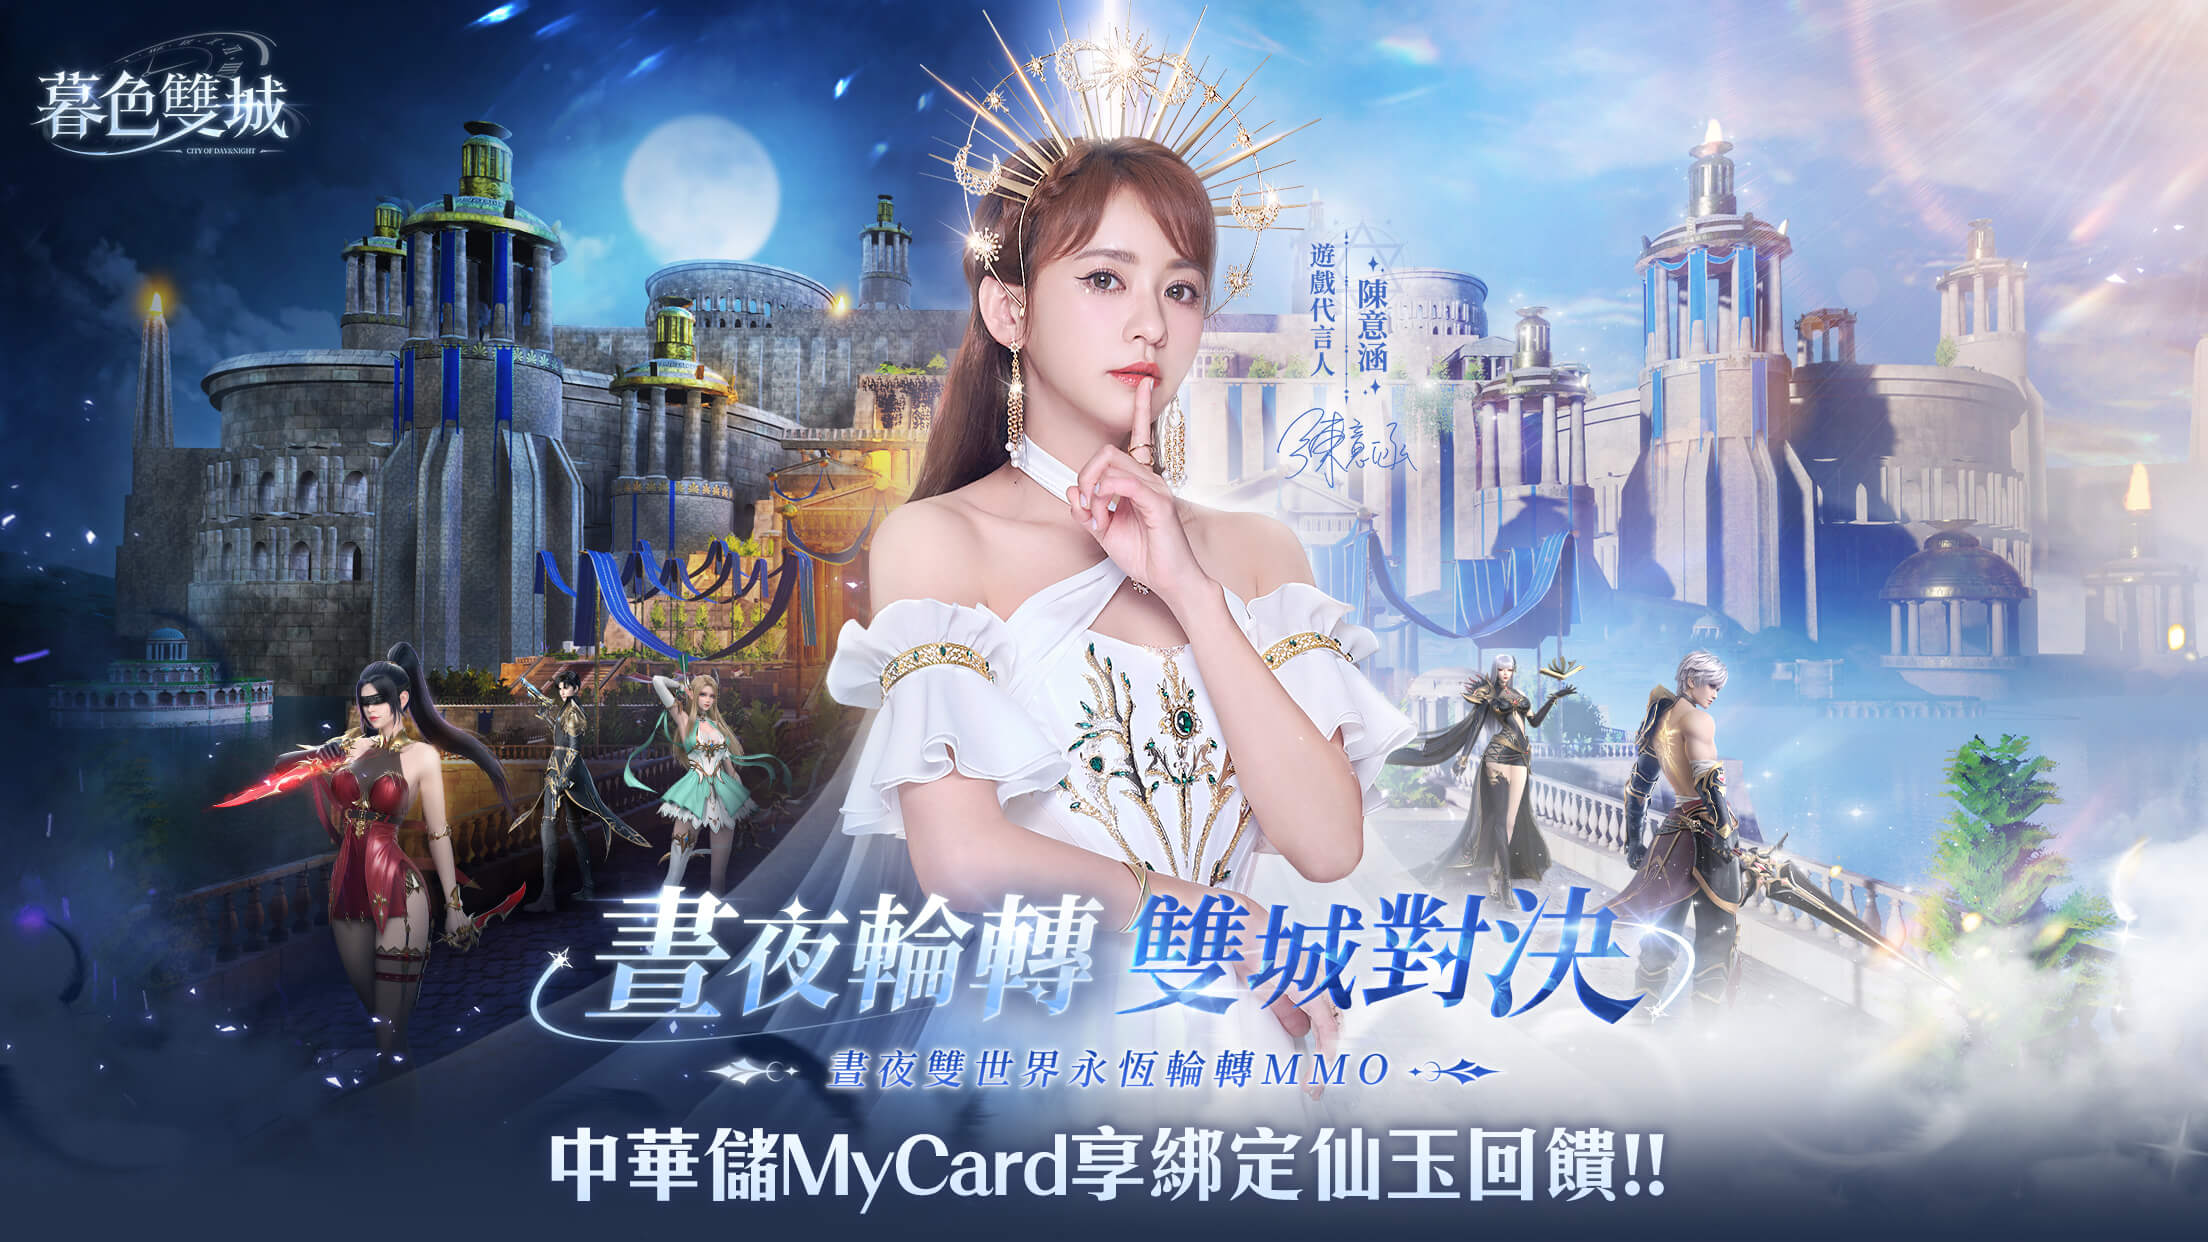   《暮色雙城》MyCard儲值享仙玉回饋 | 中華電信